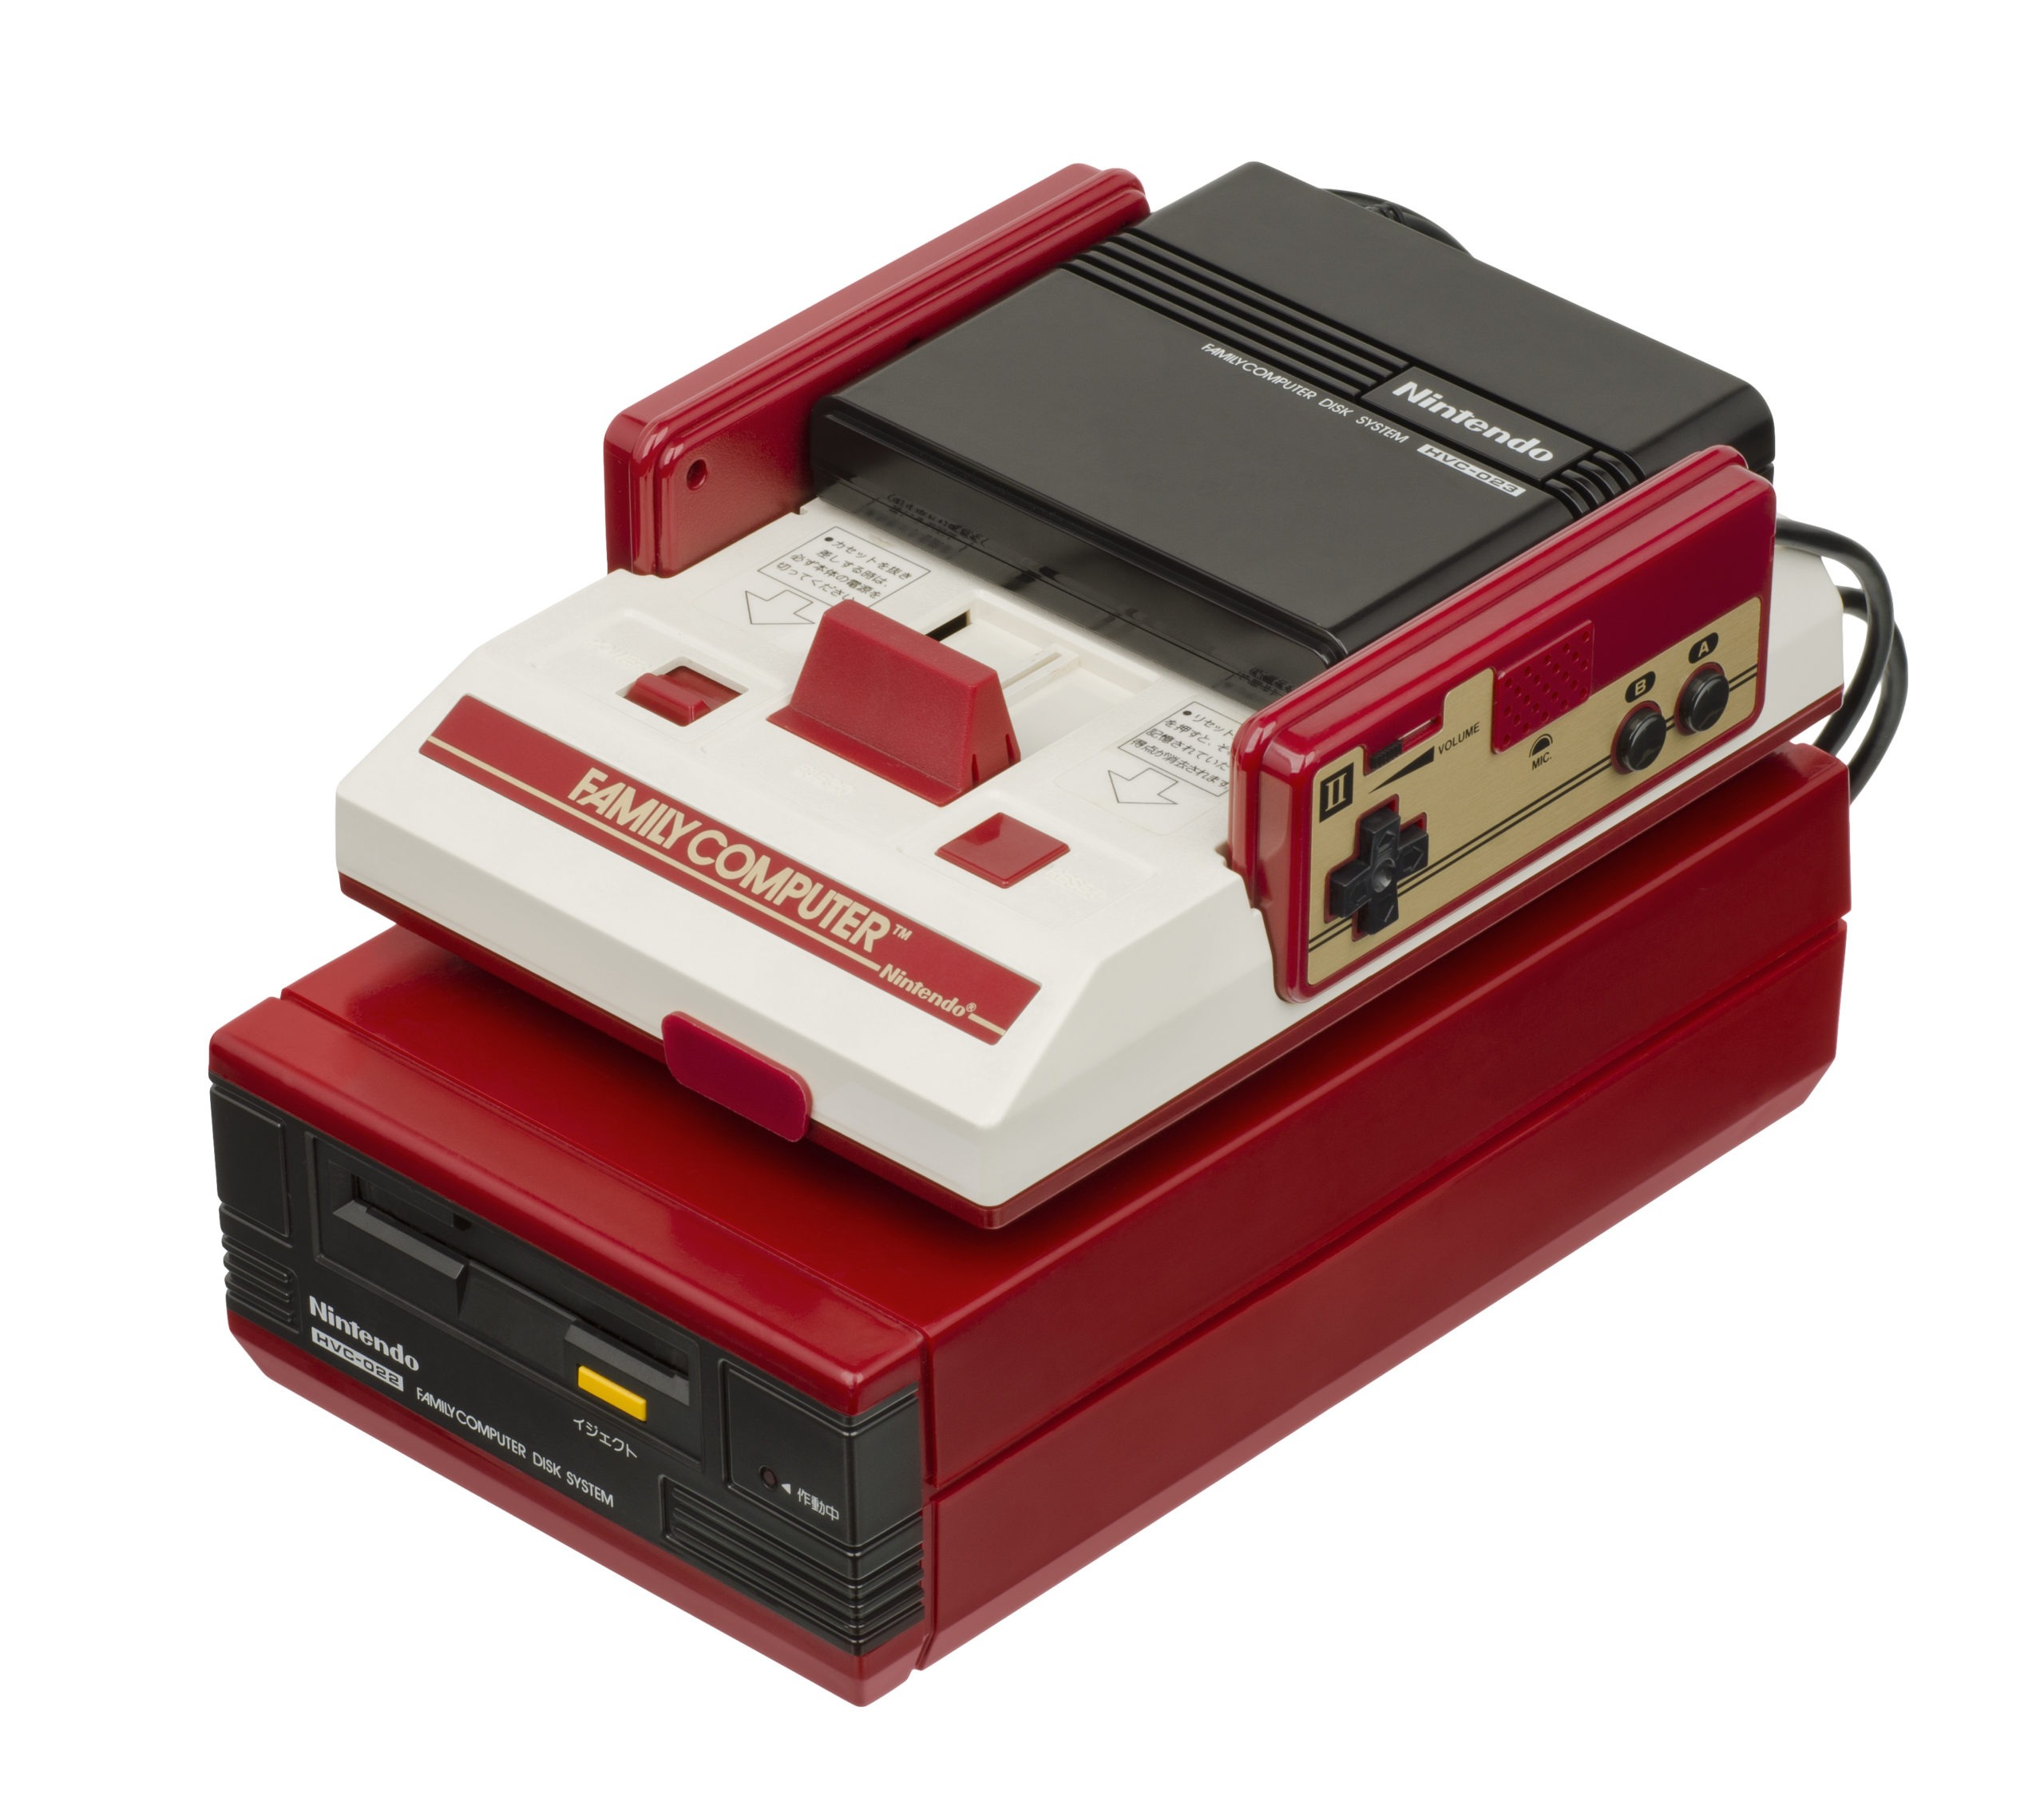 Nintendo-Famicom-Disk-System